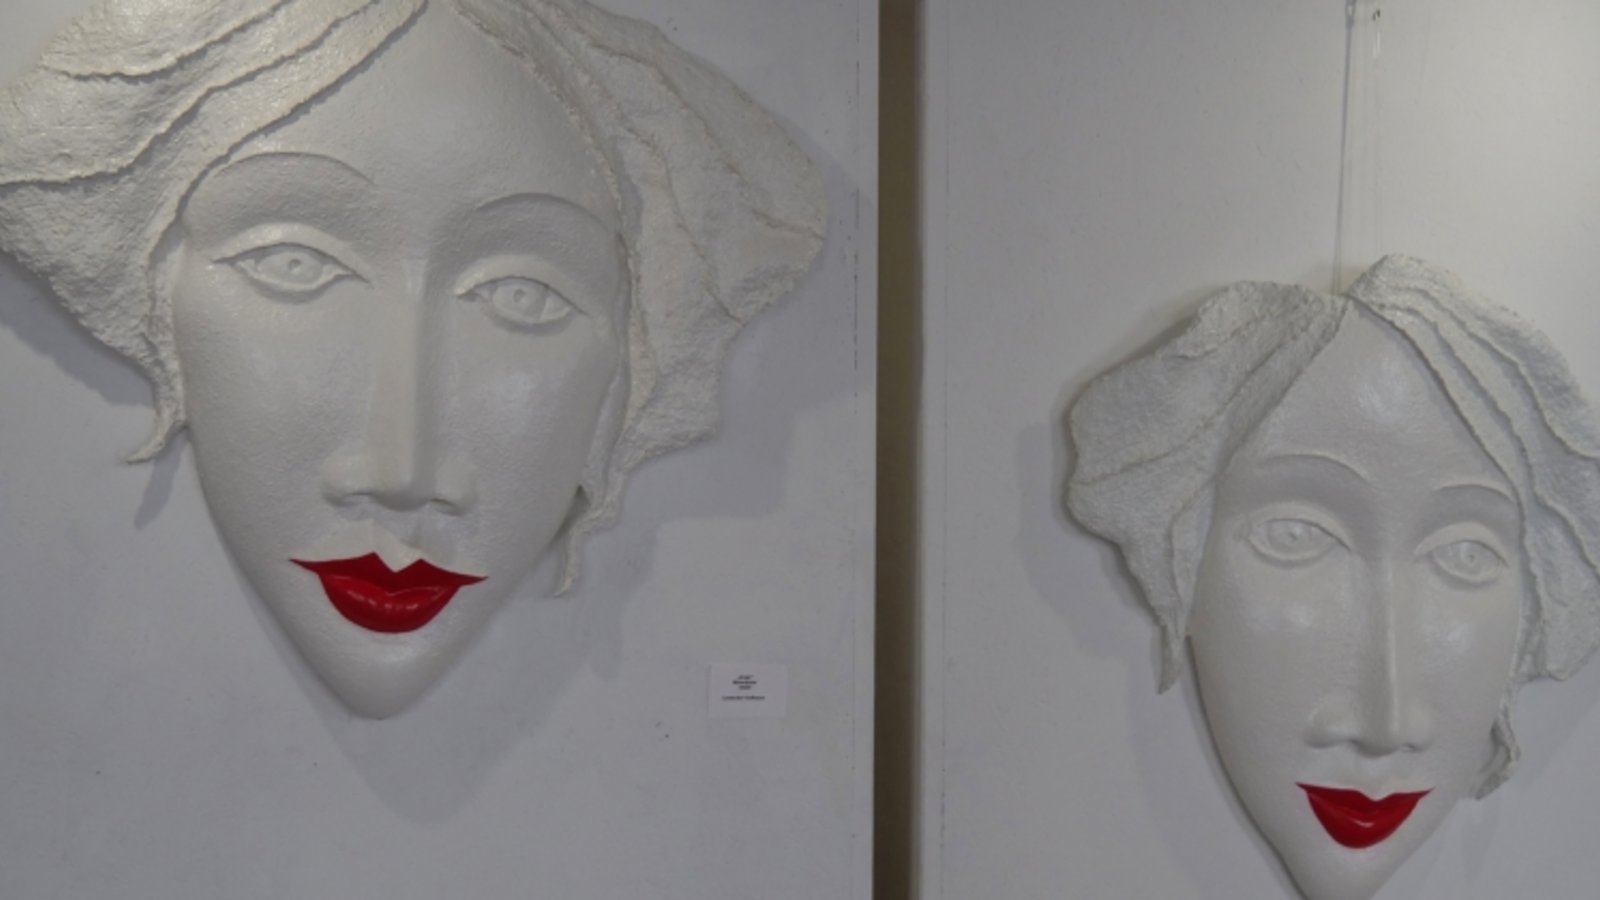 Ganz in weiß, mit roten Lippen als Kontrast: so präsentieren sich die beiden Köpfe, die Veronika Lausecker-Hoffmann geschaffen hat.